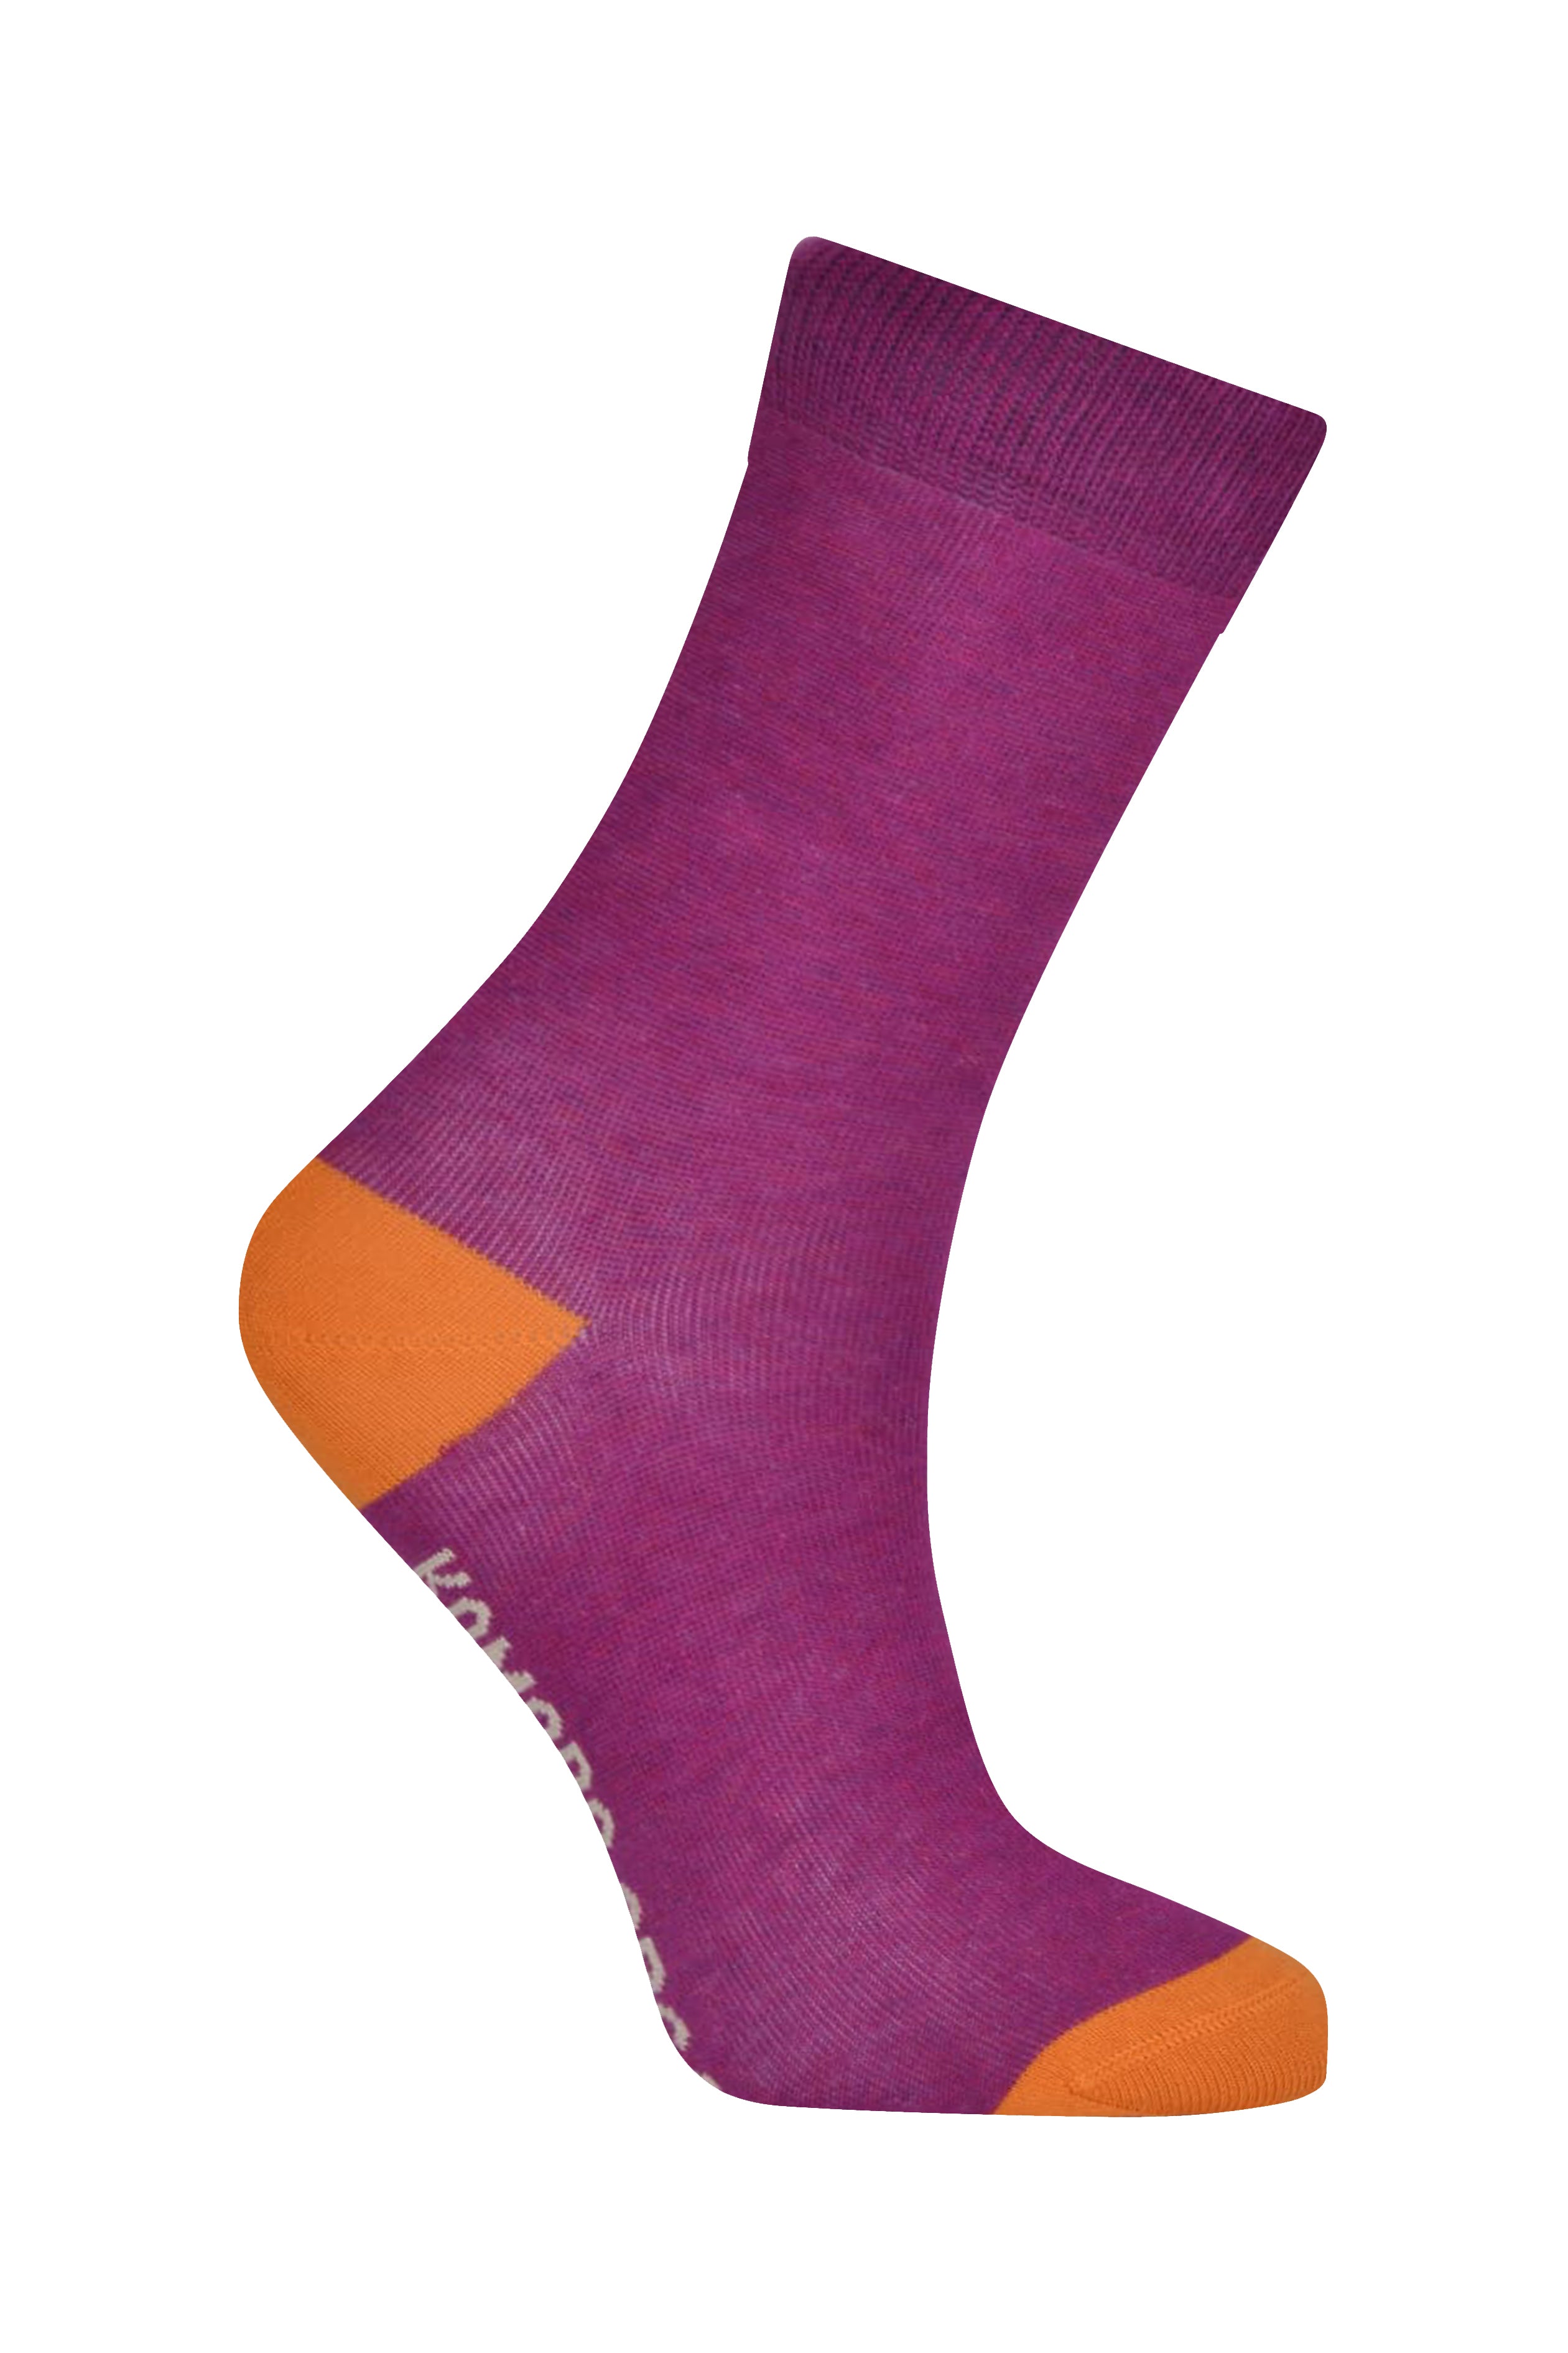 Komodo Punchy Organic Cotton Socks - Pink